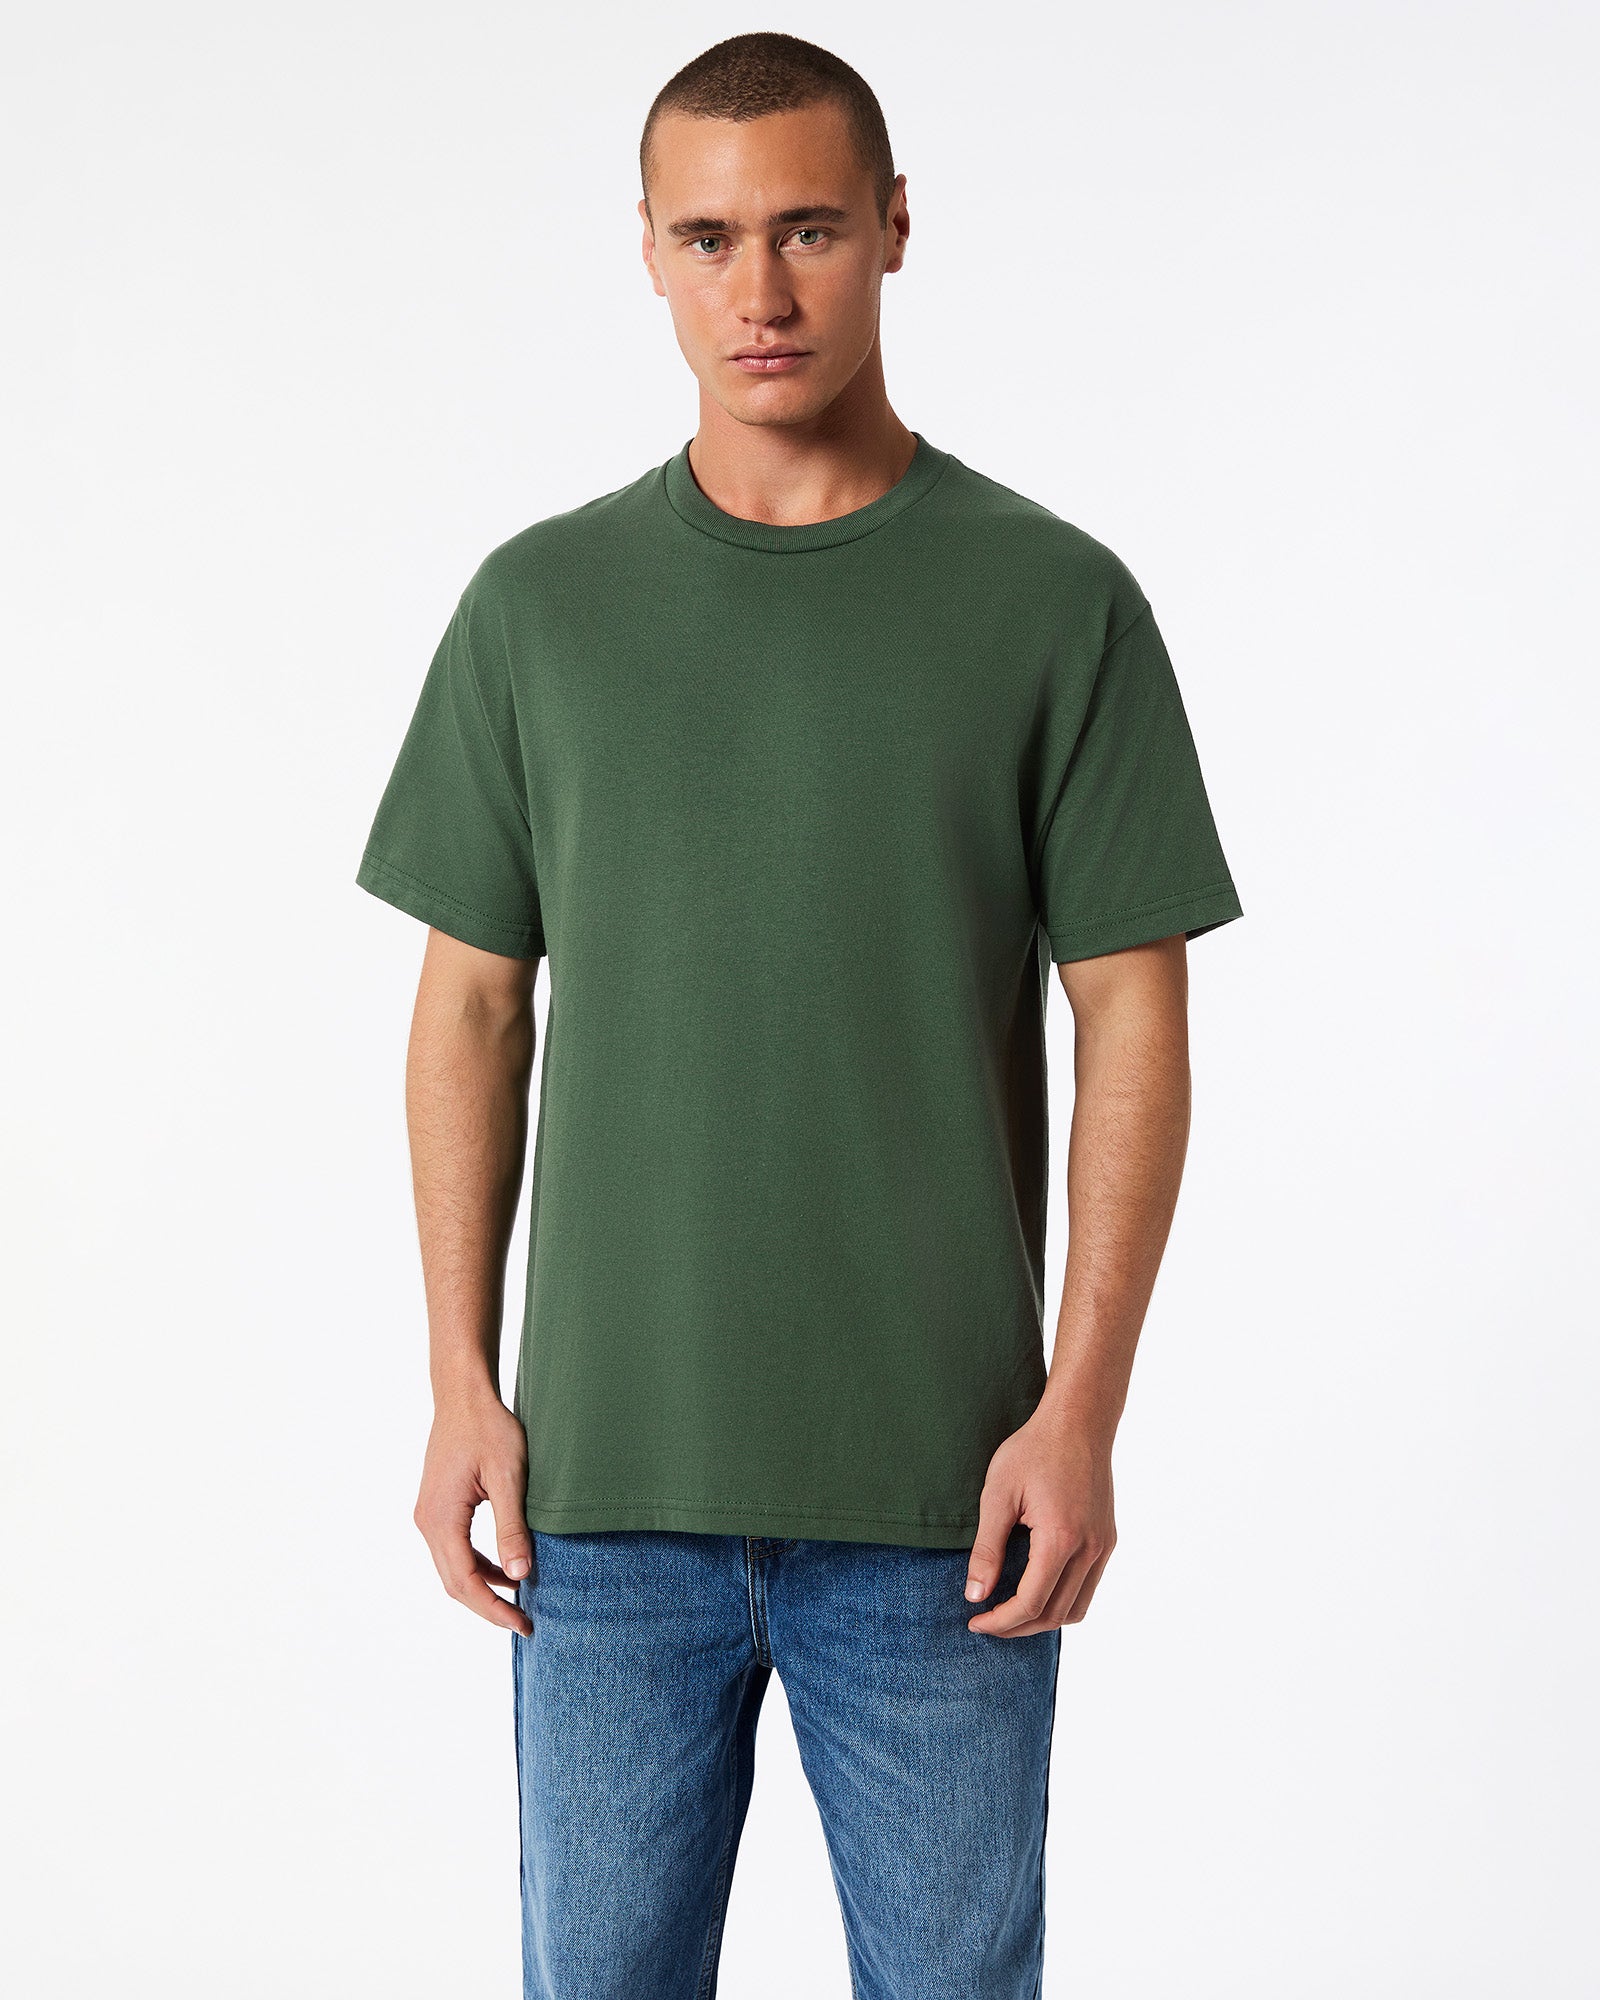 Heavyweight Unisex T-Shirt - Forest Green